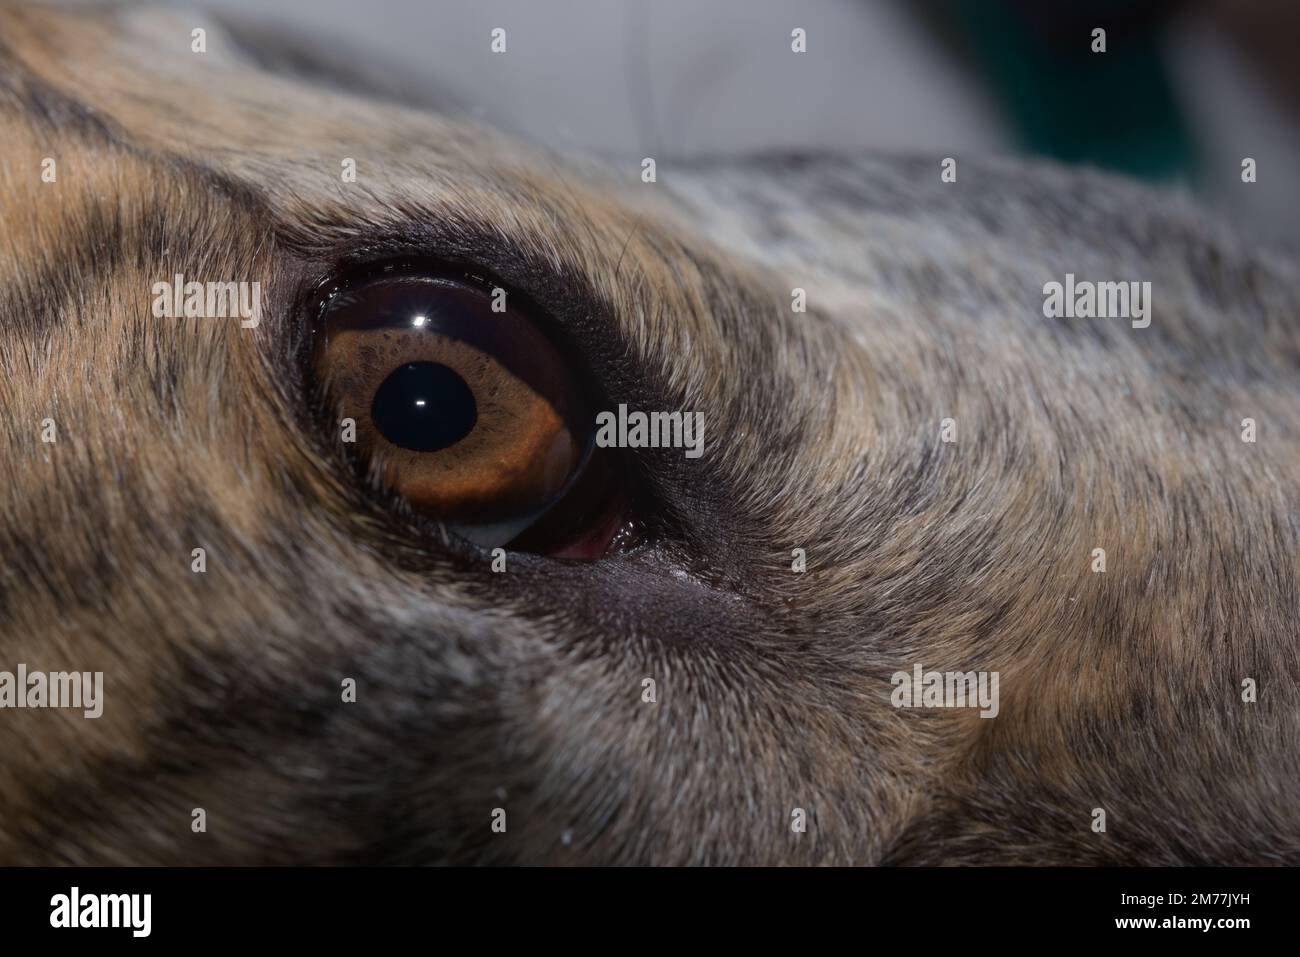 Détails étonnants dans l'iris brun de cet animal de compagnie greyhound chiens grand oeil. Copiez l'espace en haut et à droite de l'image, abstrait beauté d'animal domestique. Banque D'Images